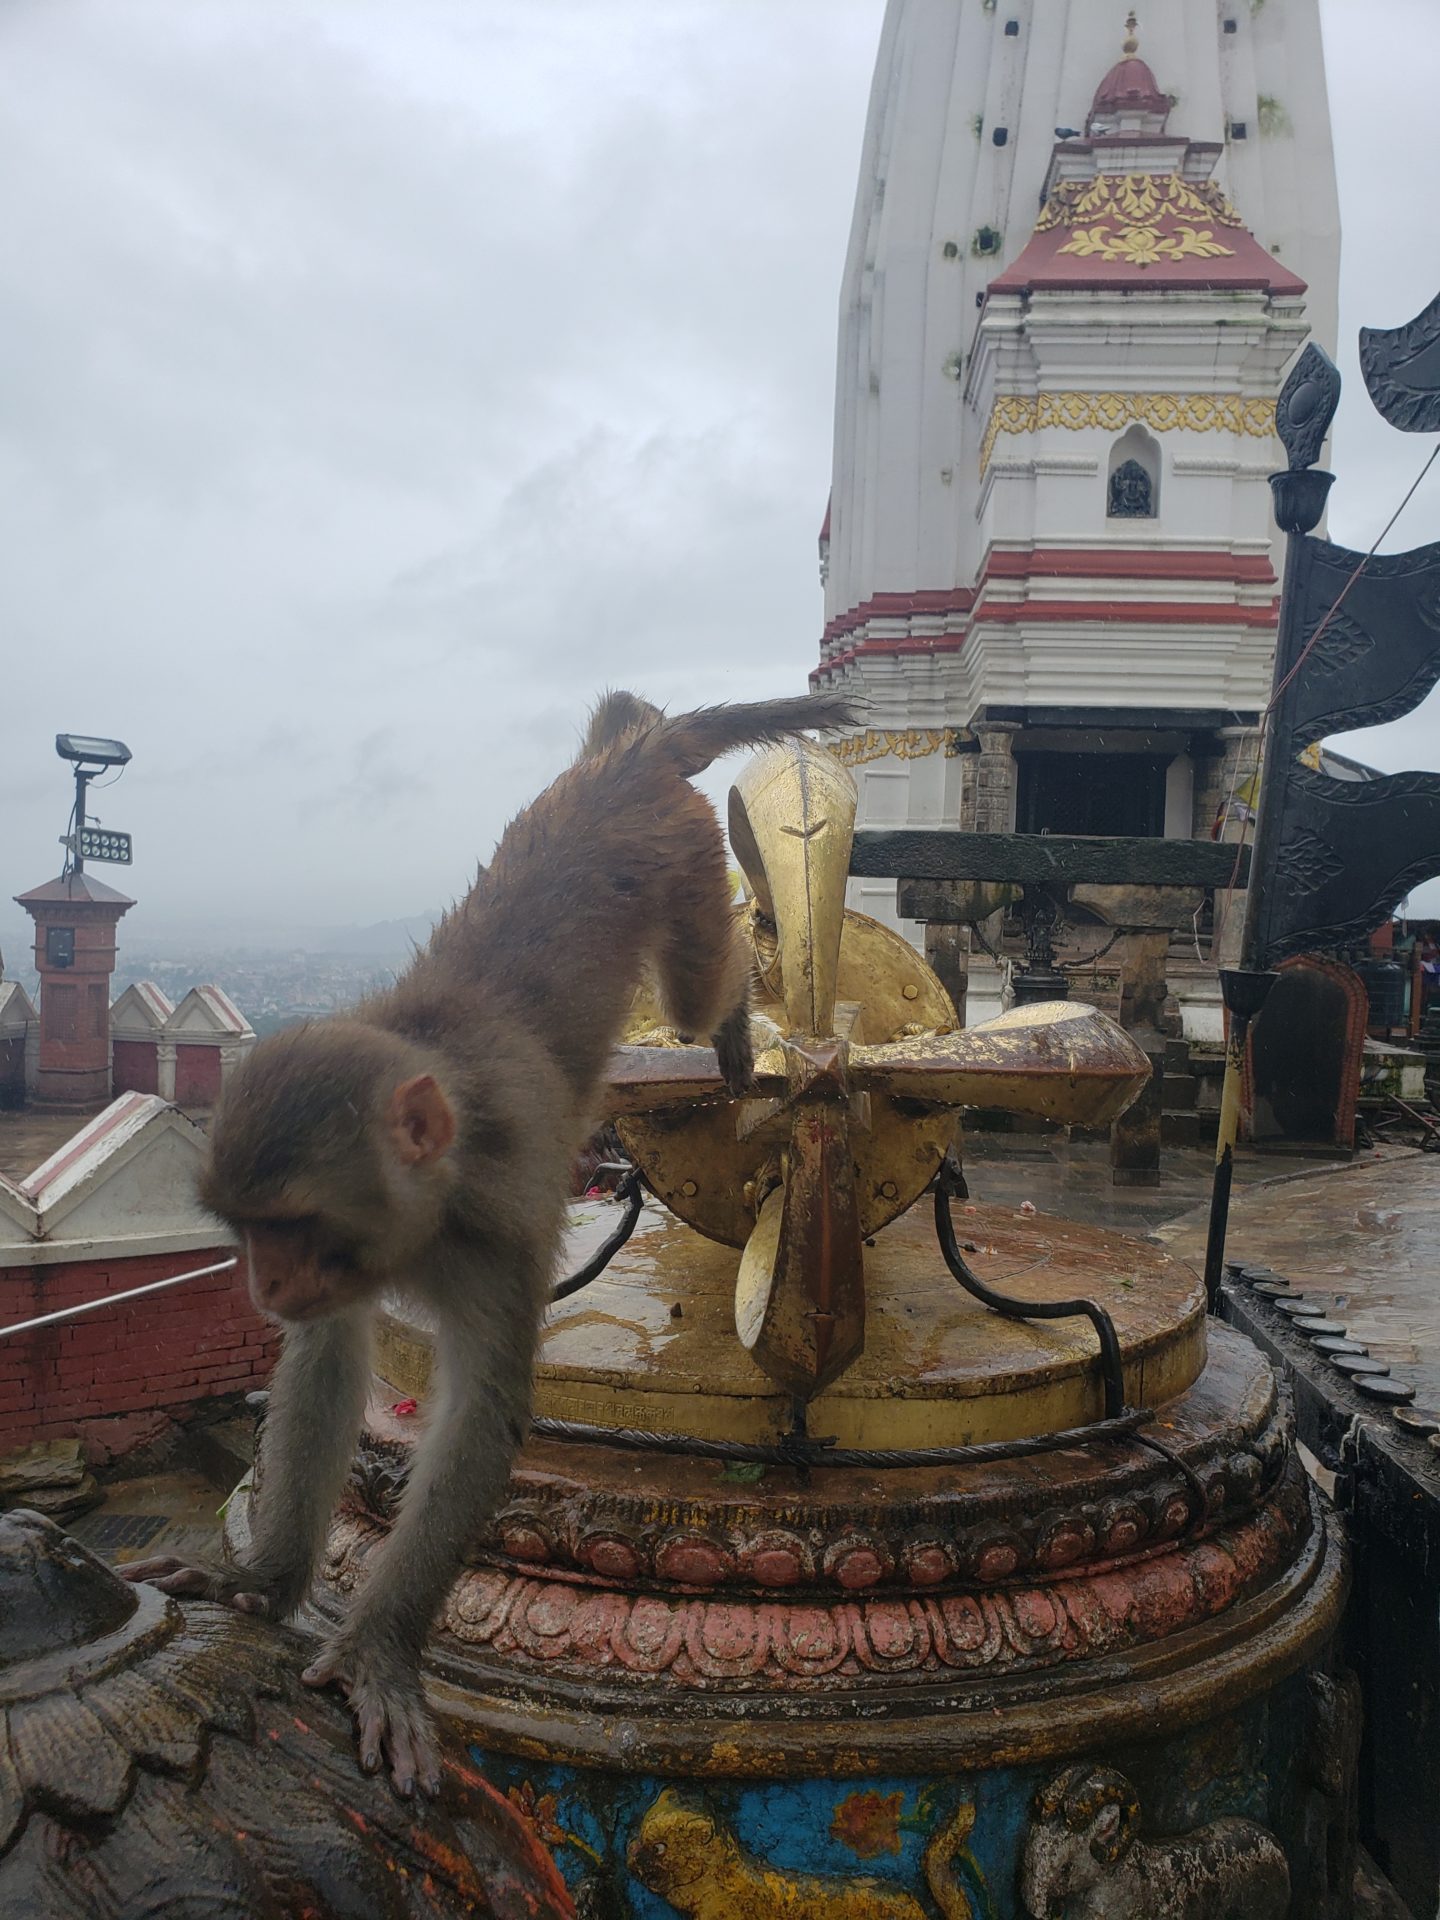 a monkey walking on a fountain